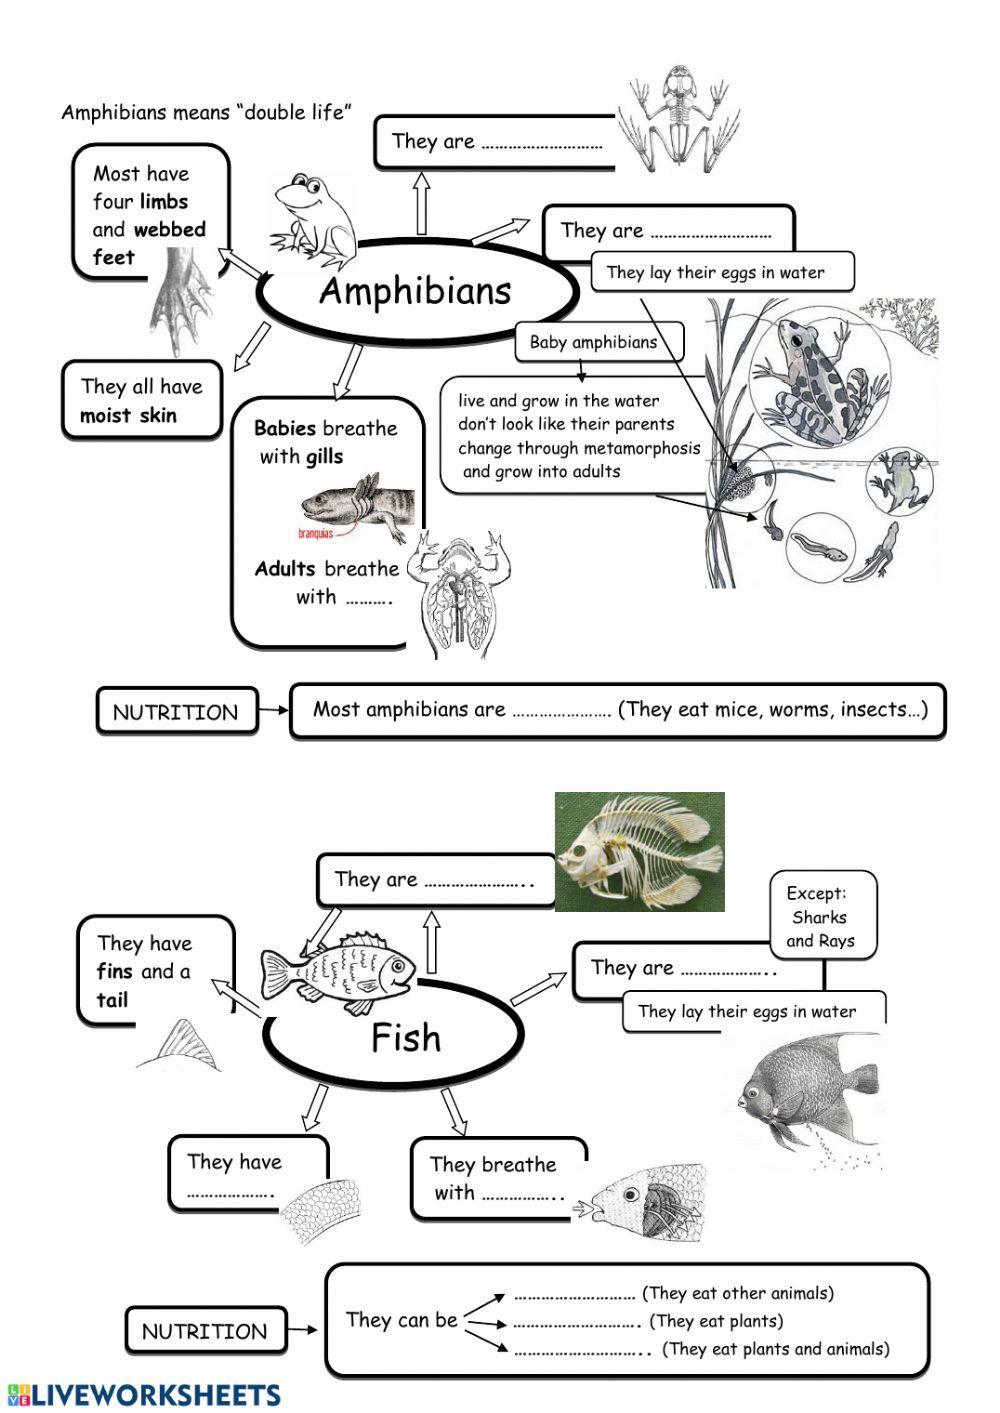 Mammals, birds, reptiles, amphibians and fish